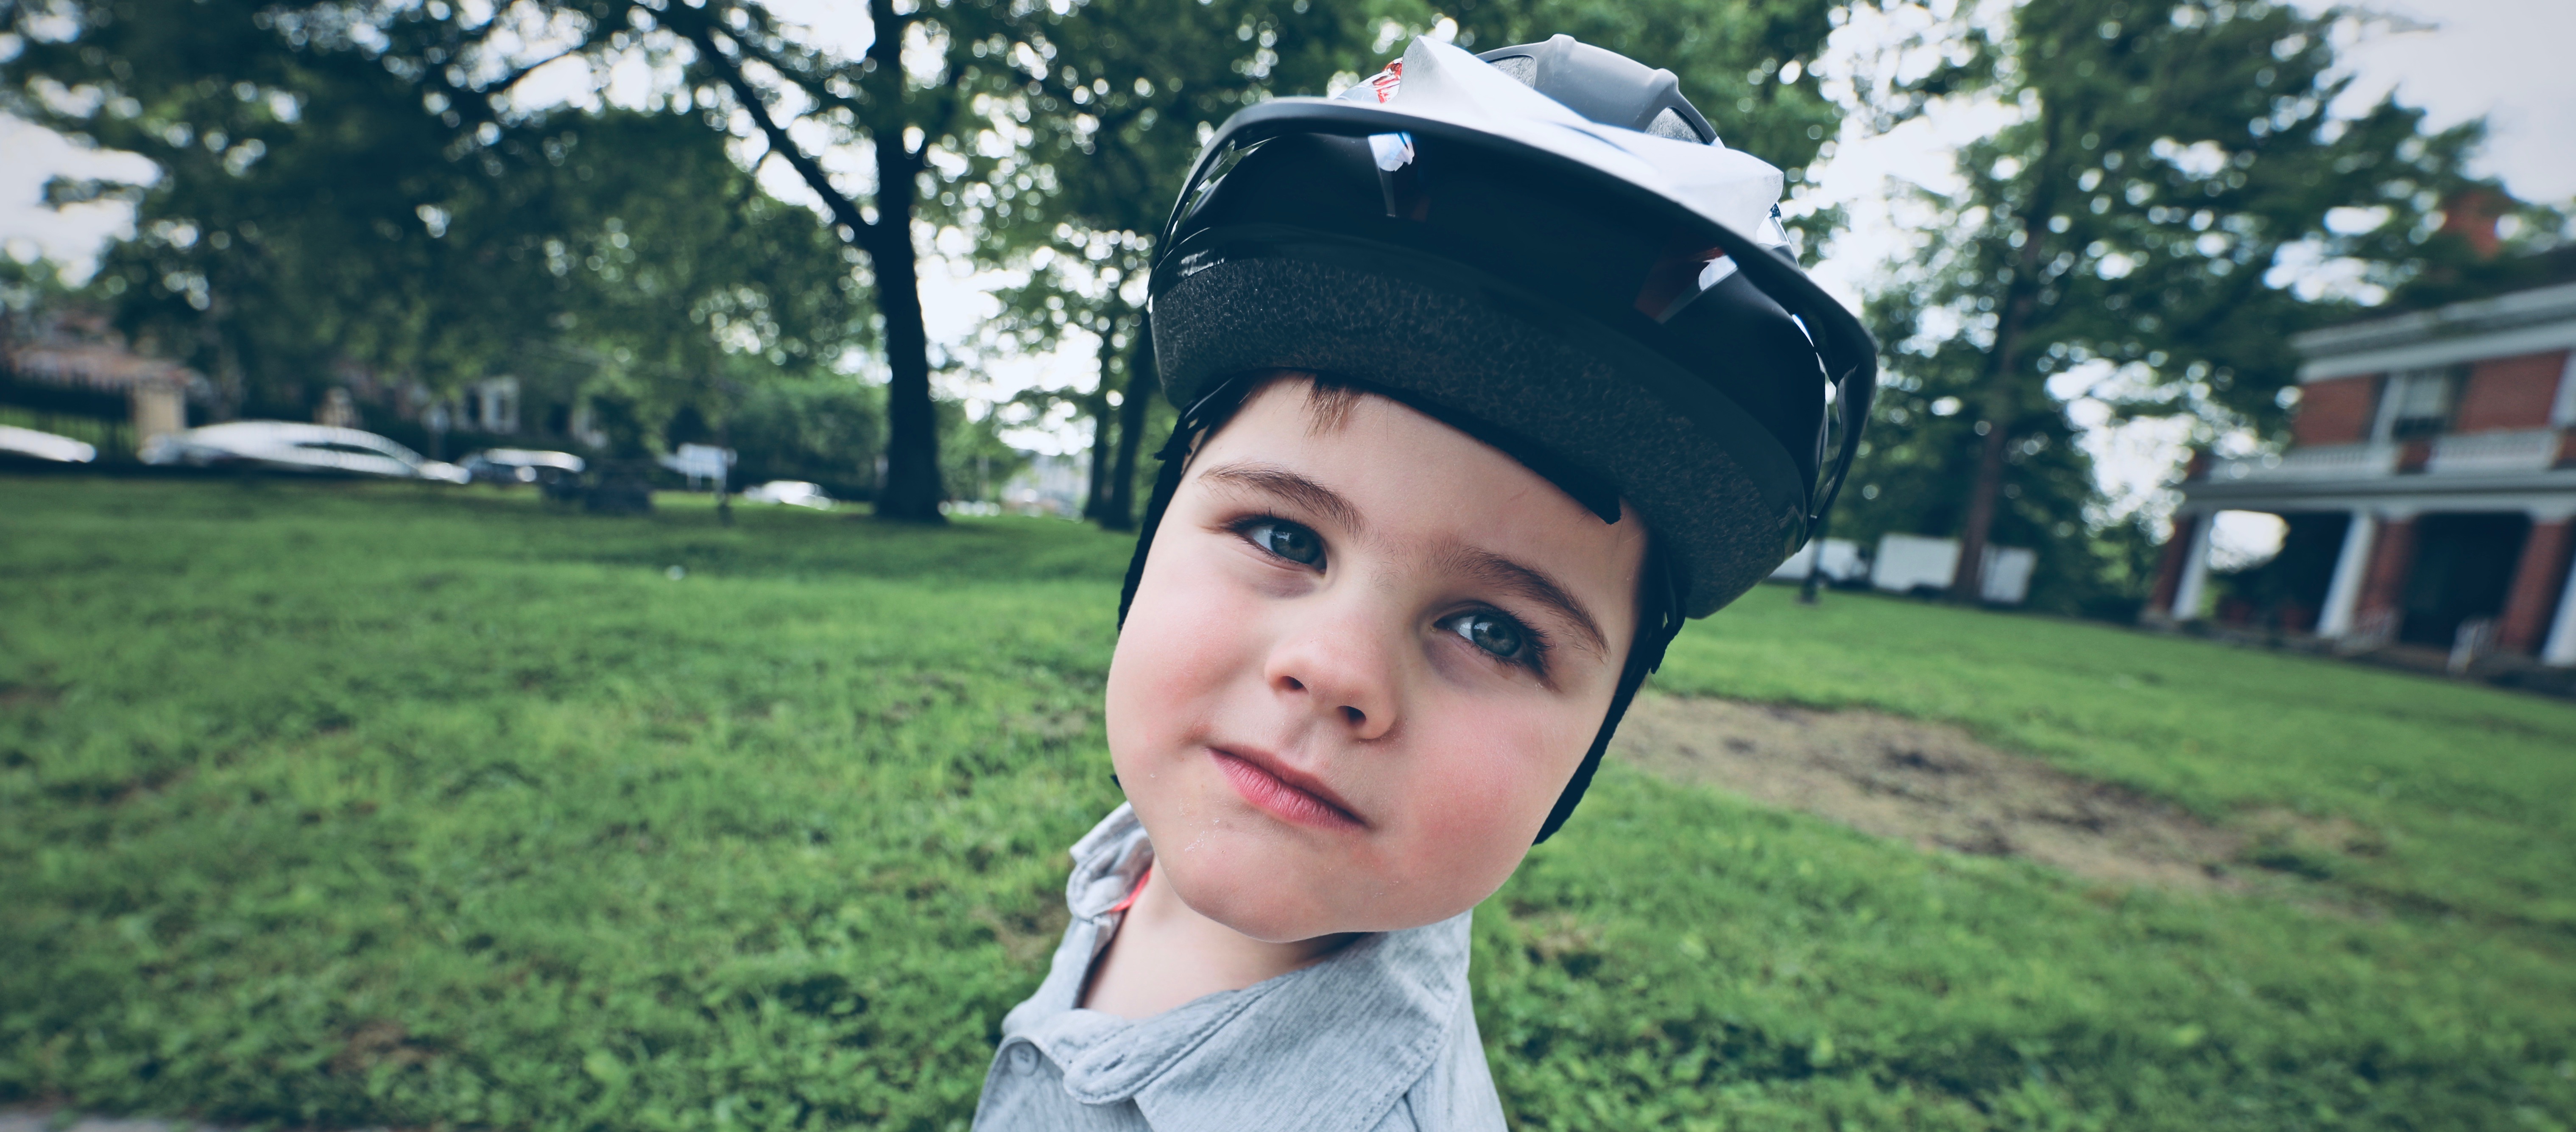 Helmets 101: A Parent’s Guide